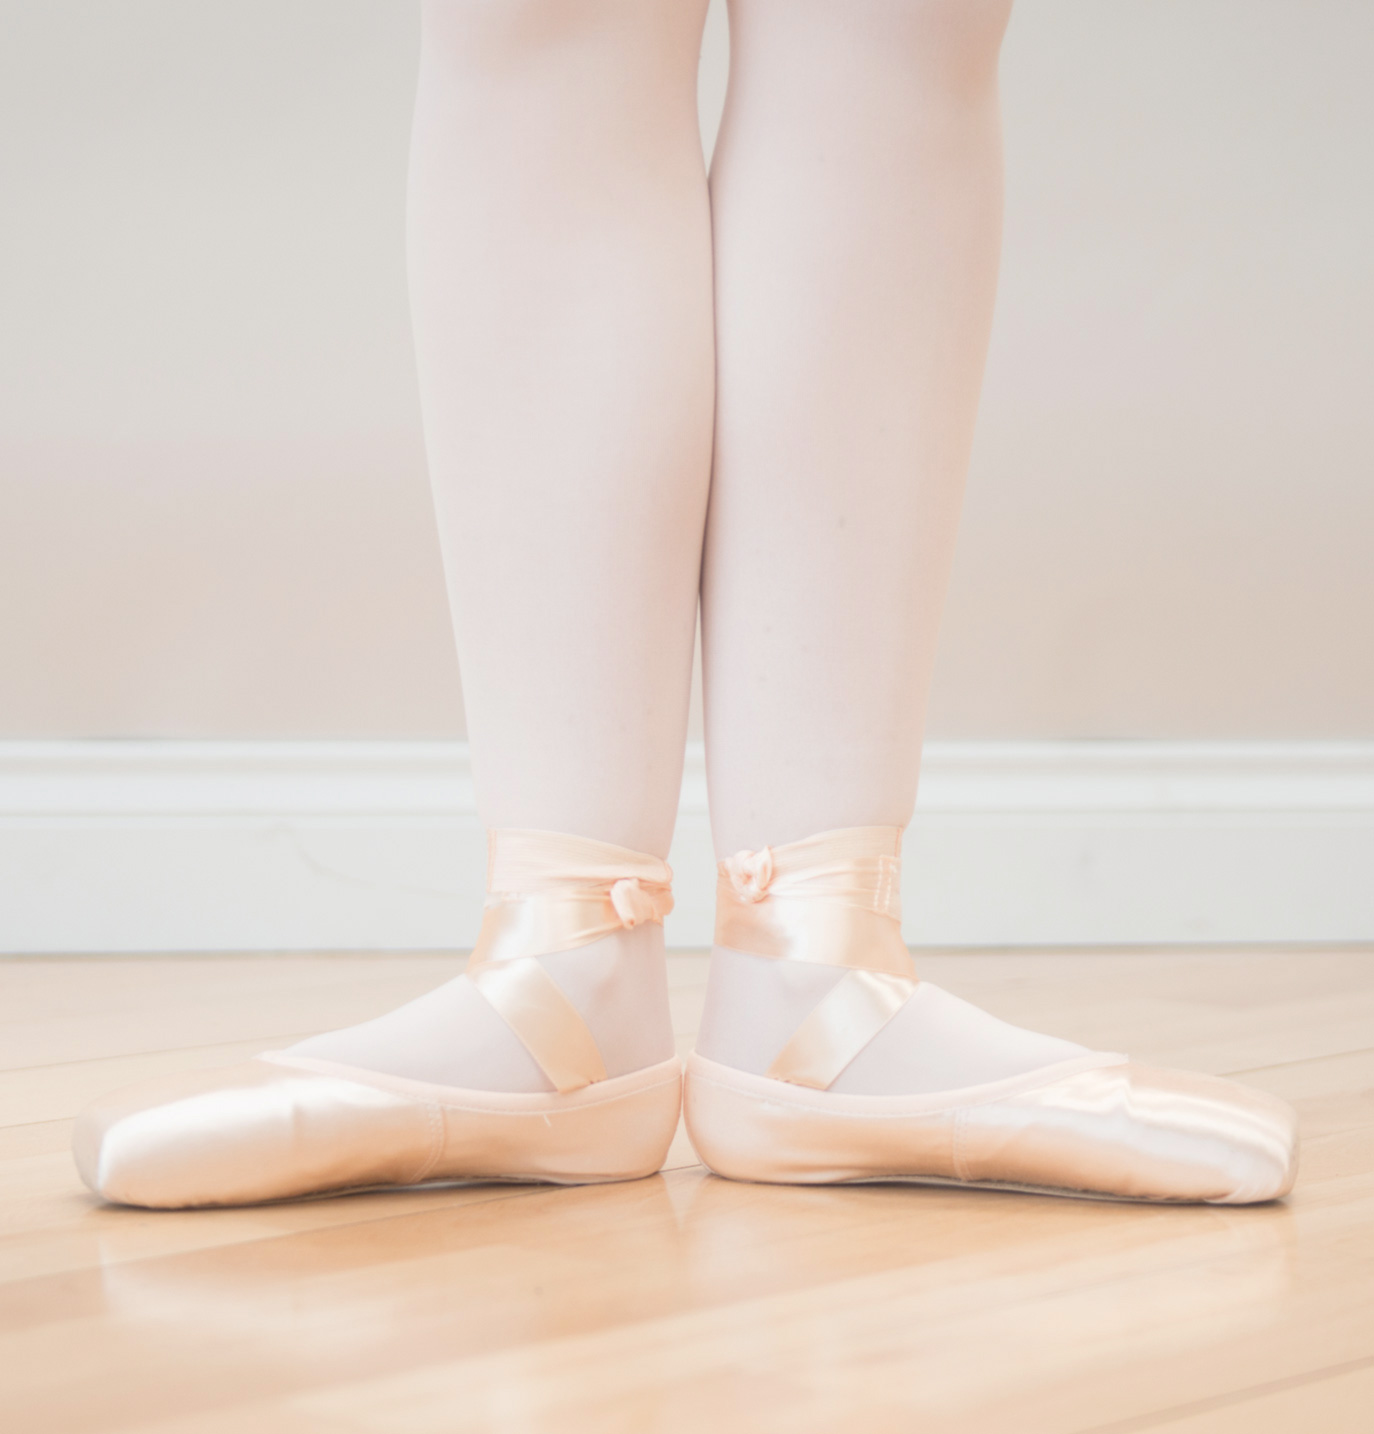 50,000+张最精彩的“芭蕾舞鞋”图片 · 100%免费下载 · Pexels素材图片